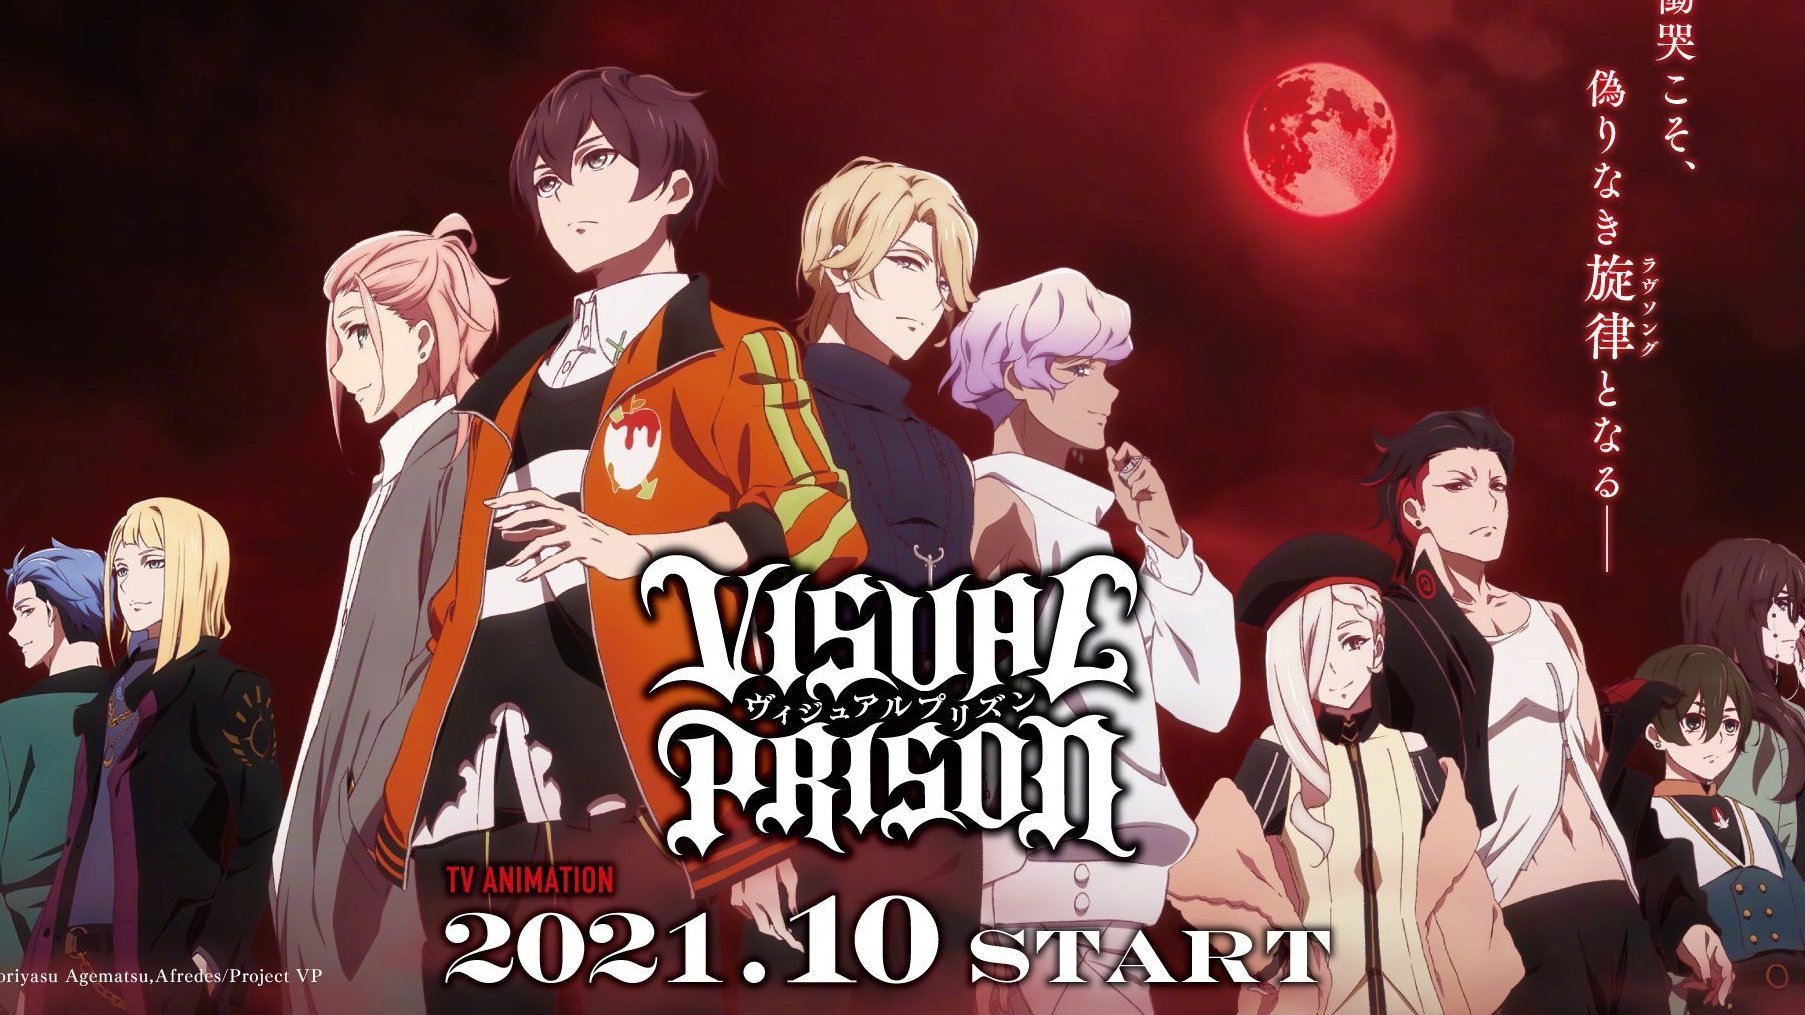 原创TV动画「VISUAL PRISON」第2弹PV公开，2021年10月开播